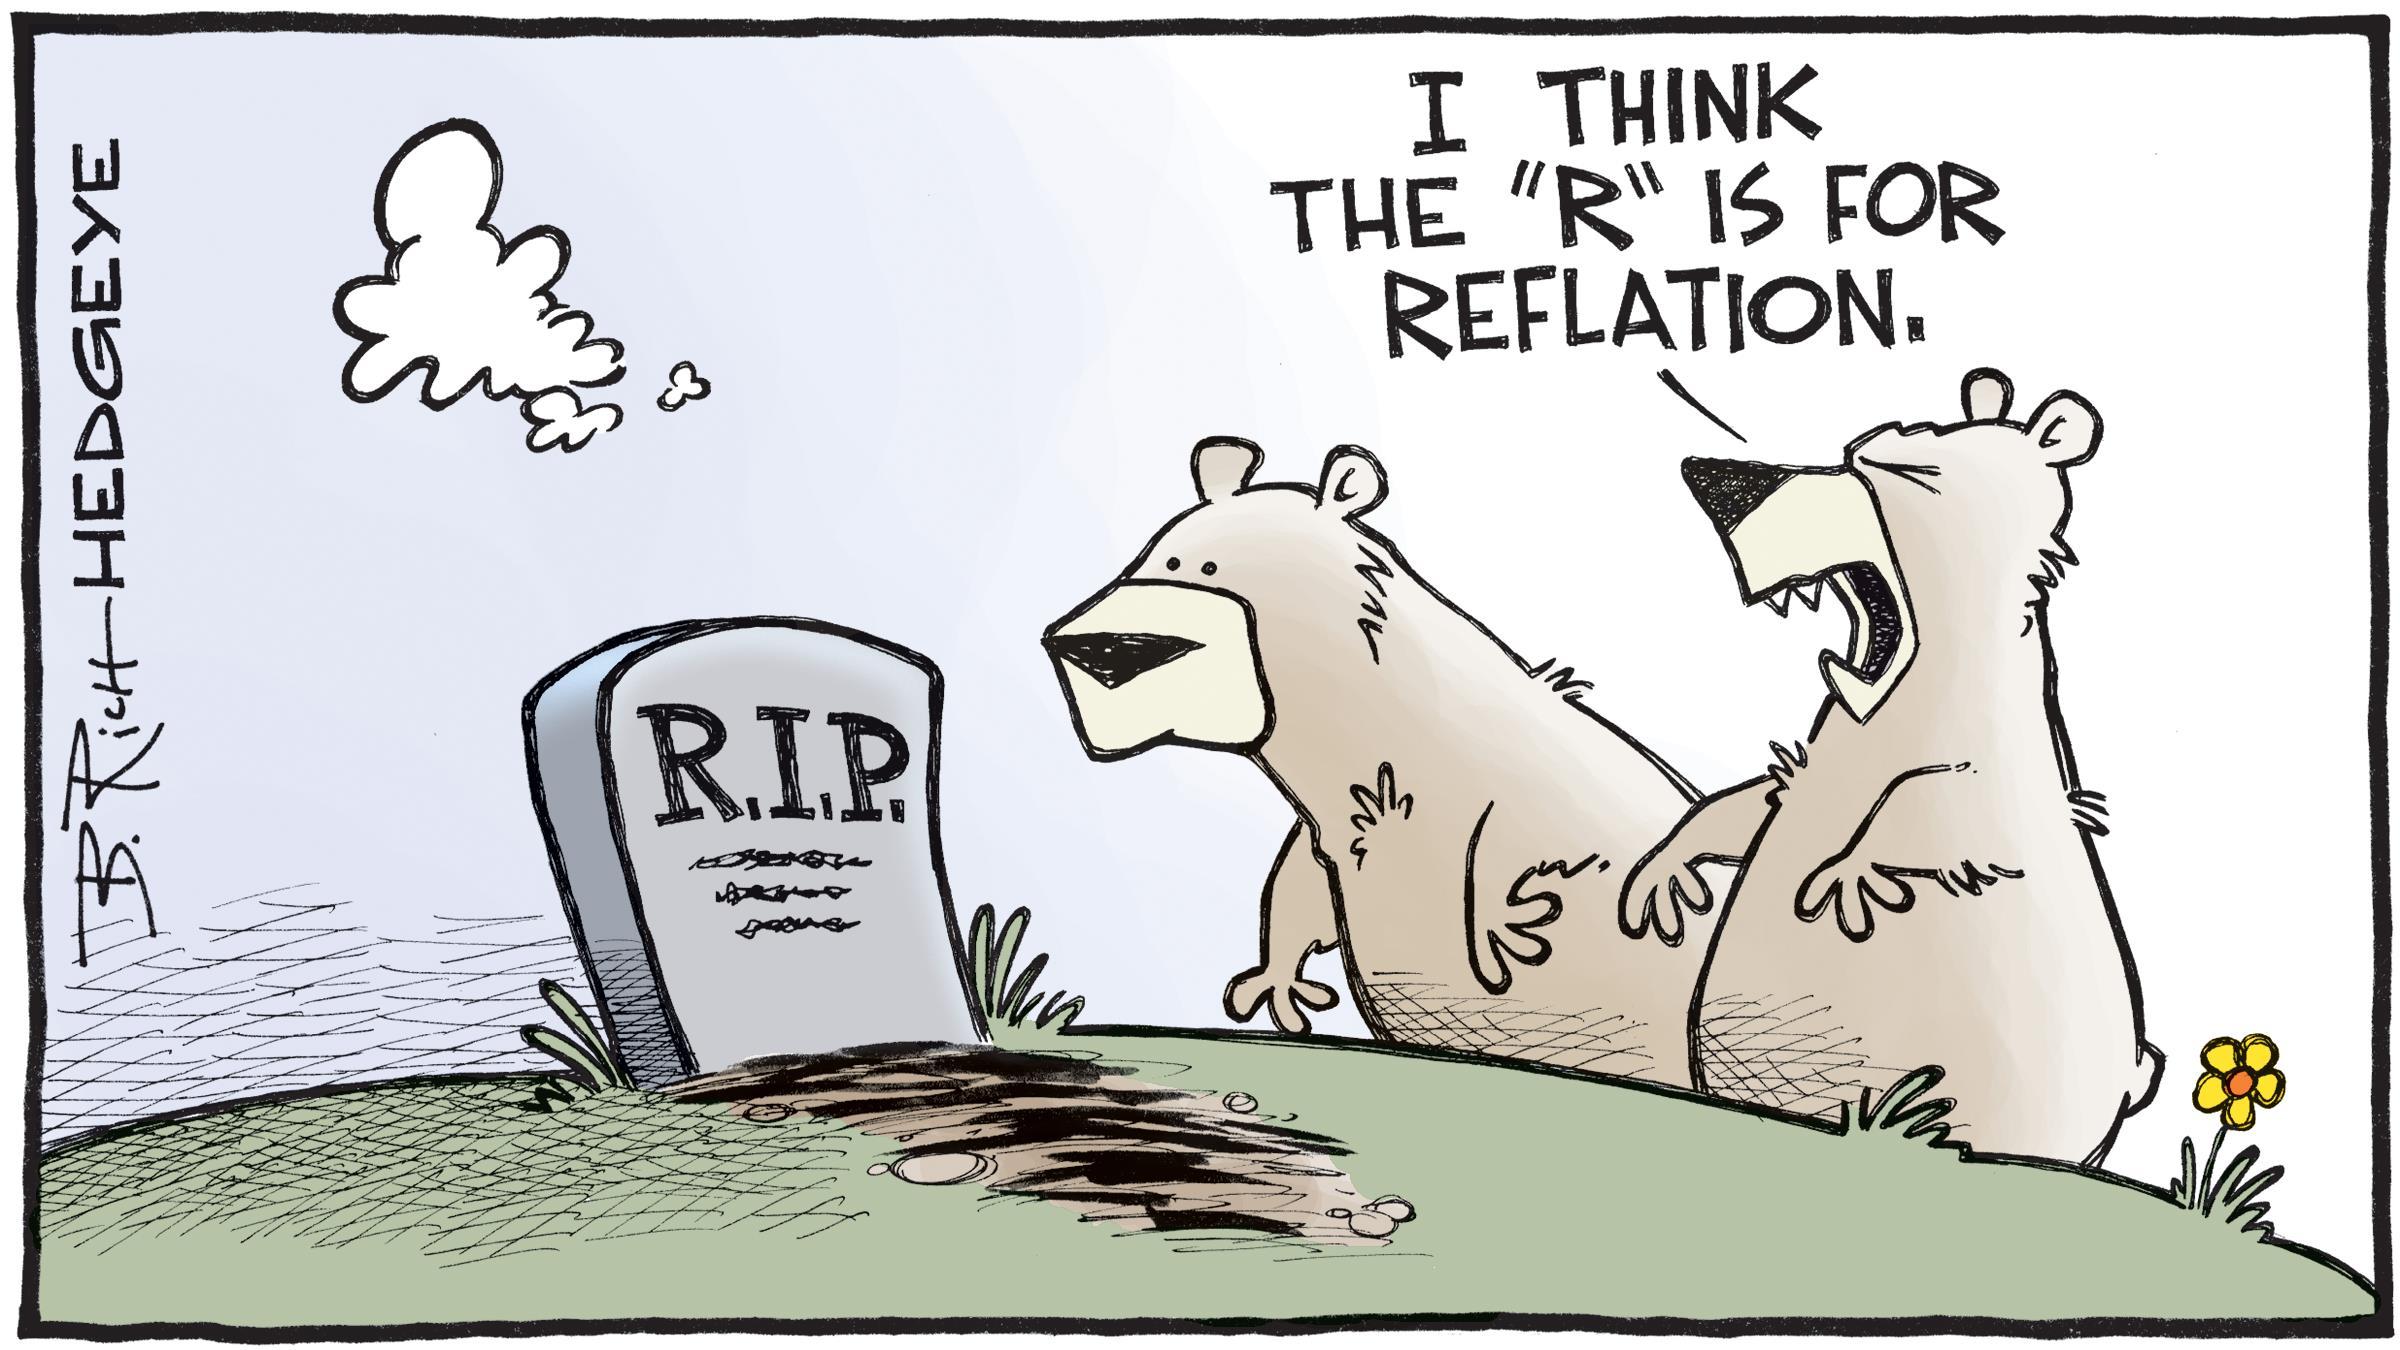 Câu chuyện về "reflation" sẽ liệu sẽ còn dẫn dắt thị trường đi tới đâu?